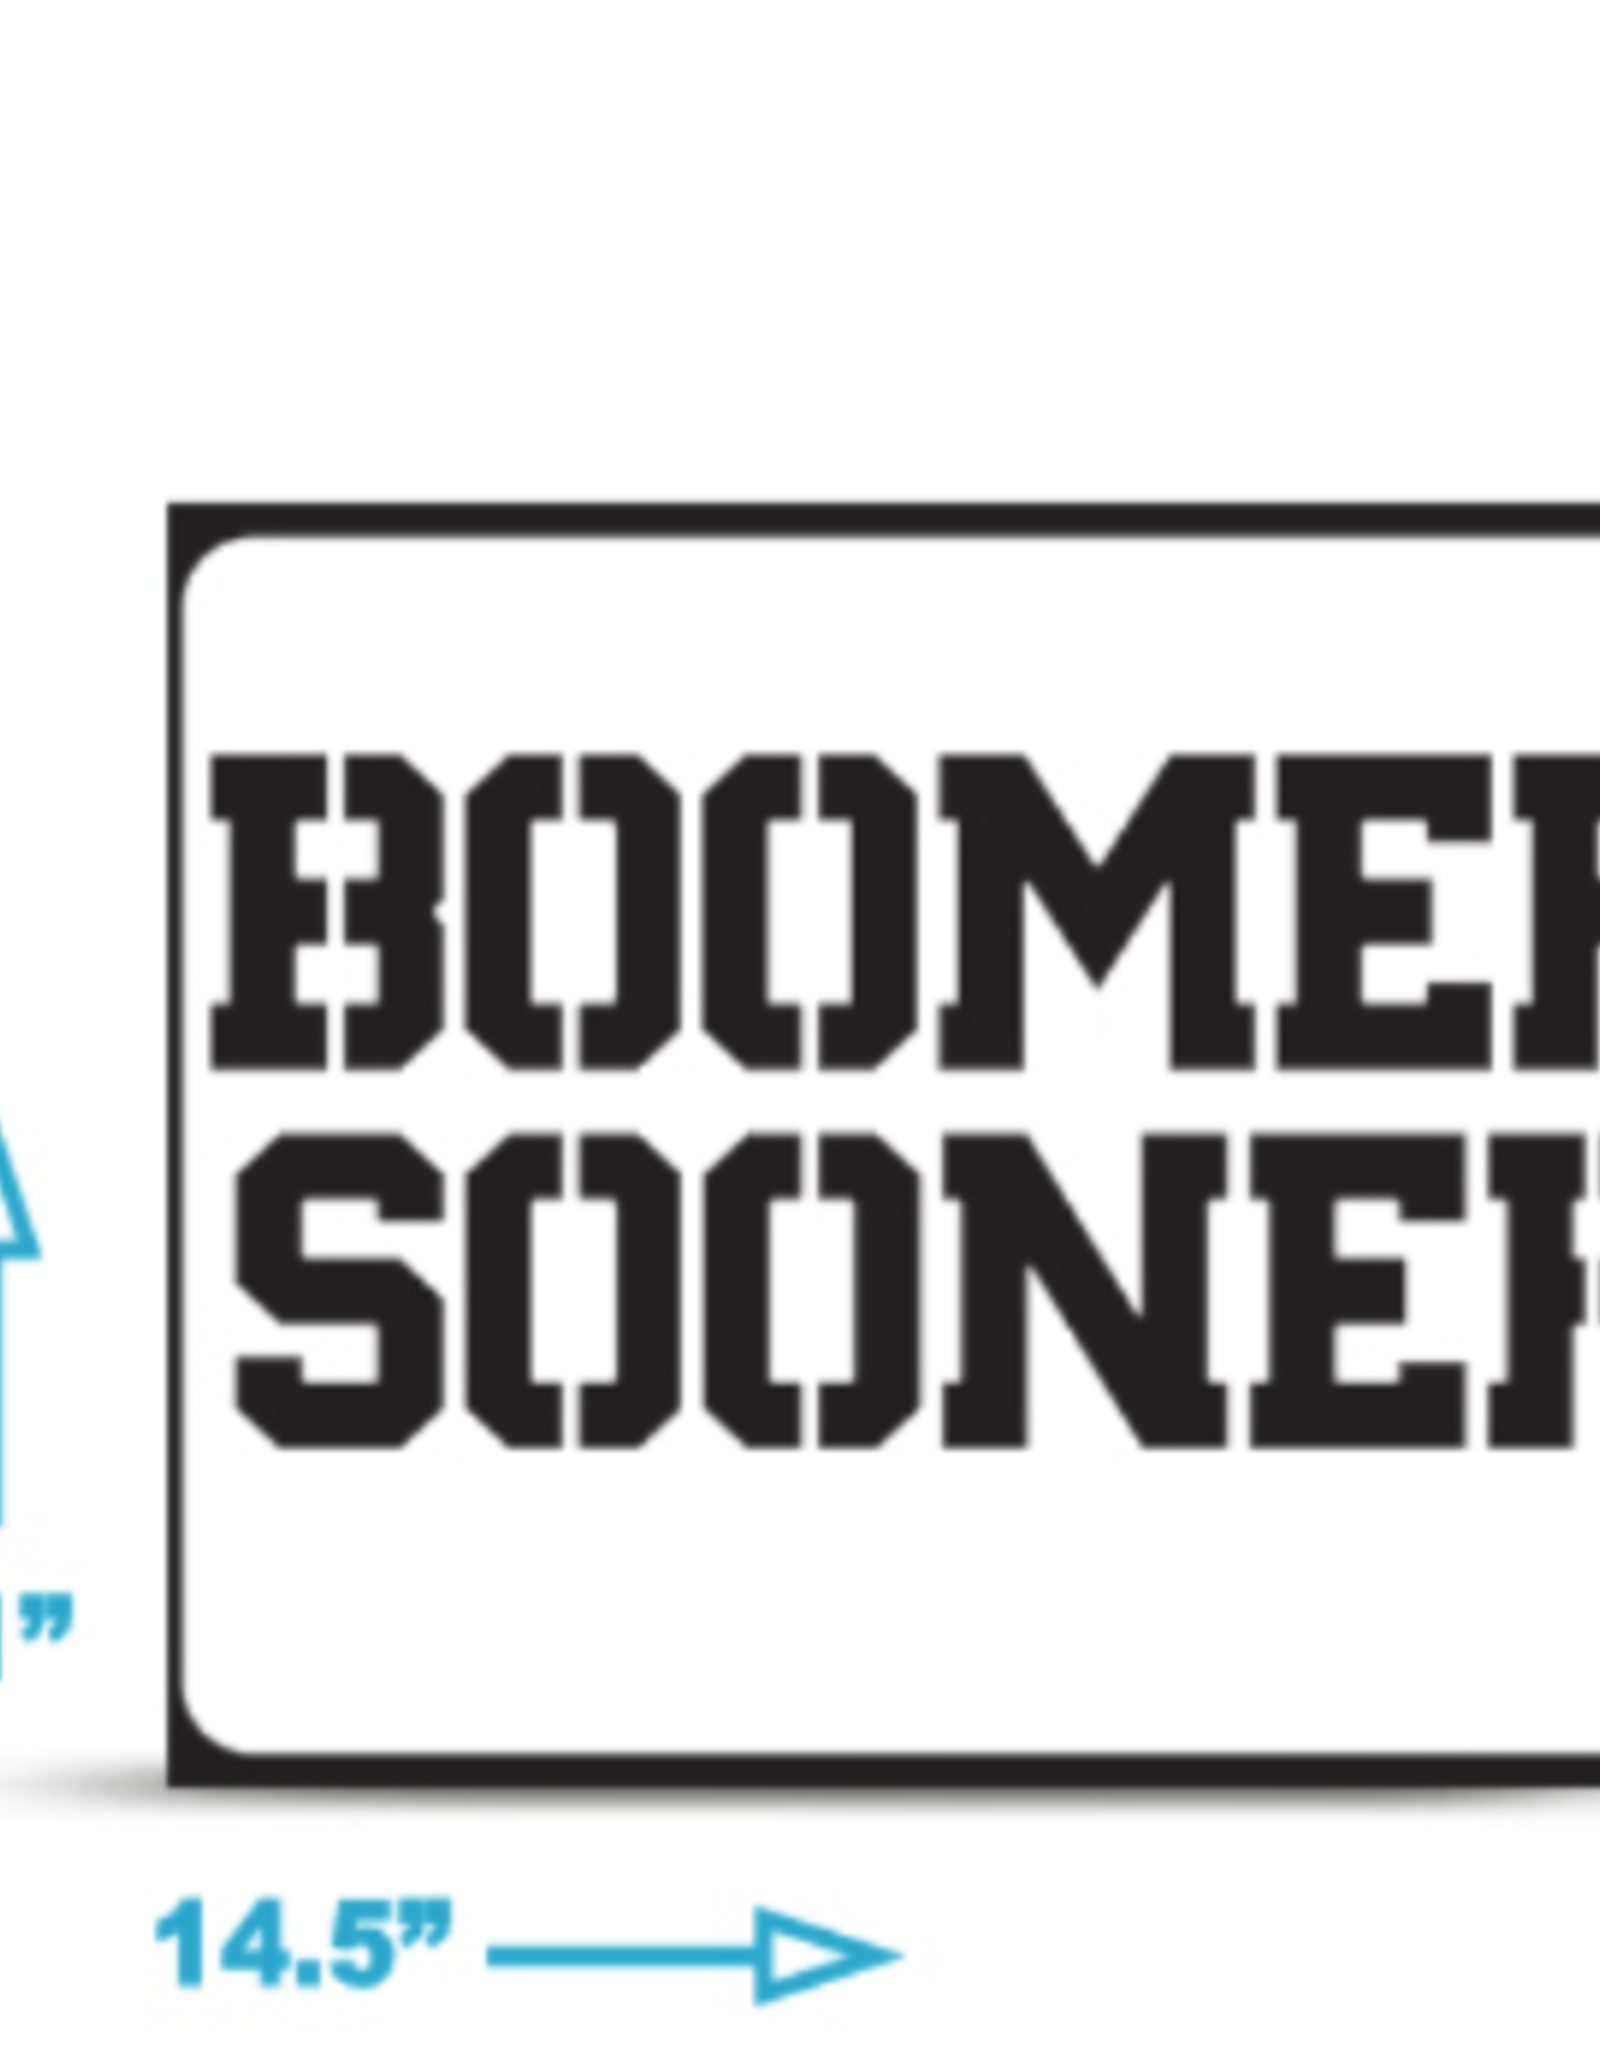 U-Stencil Boomer Sooner Mini Stencil